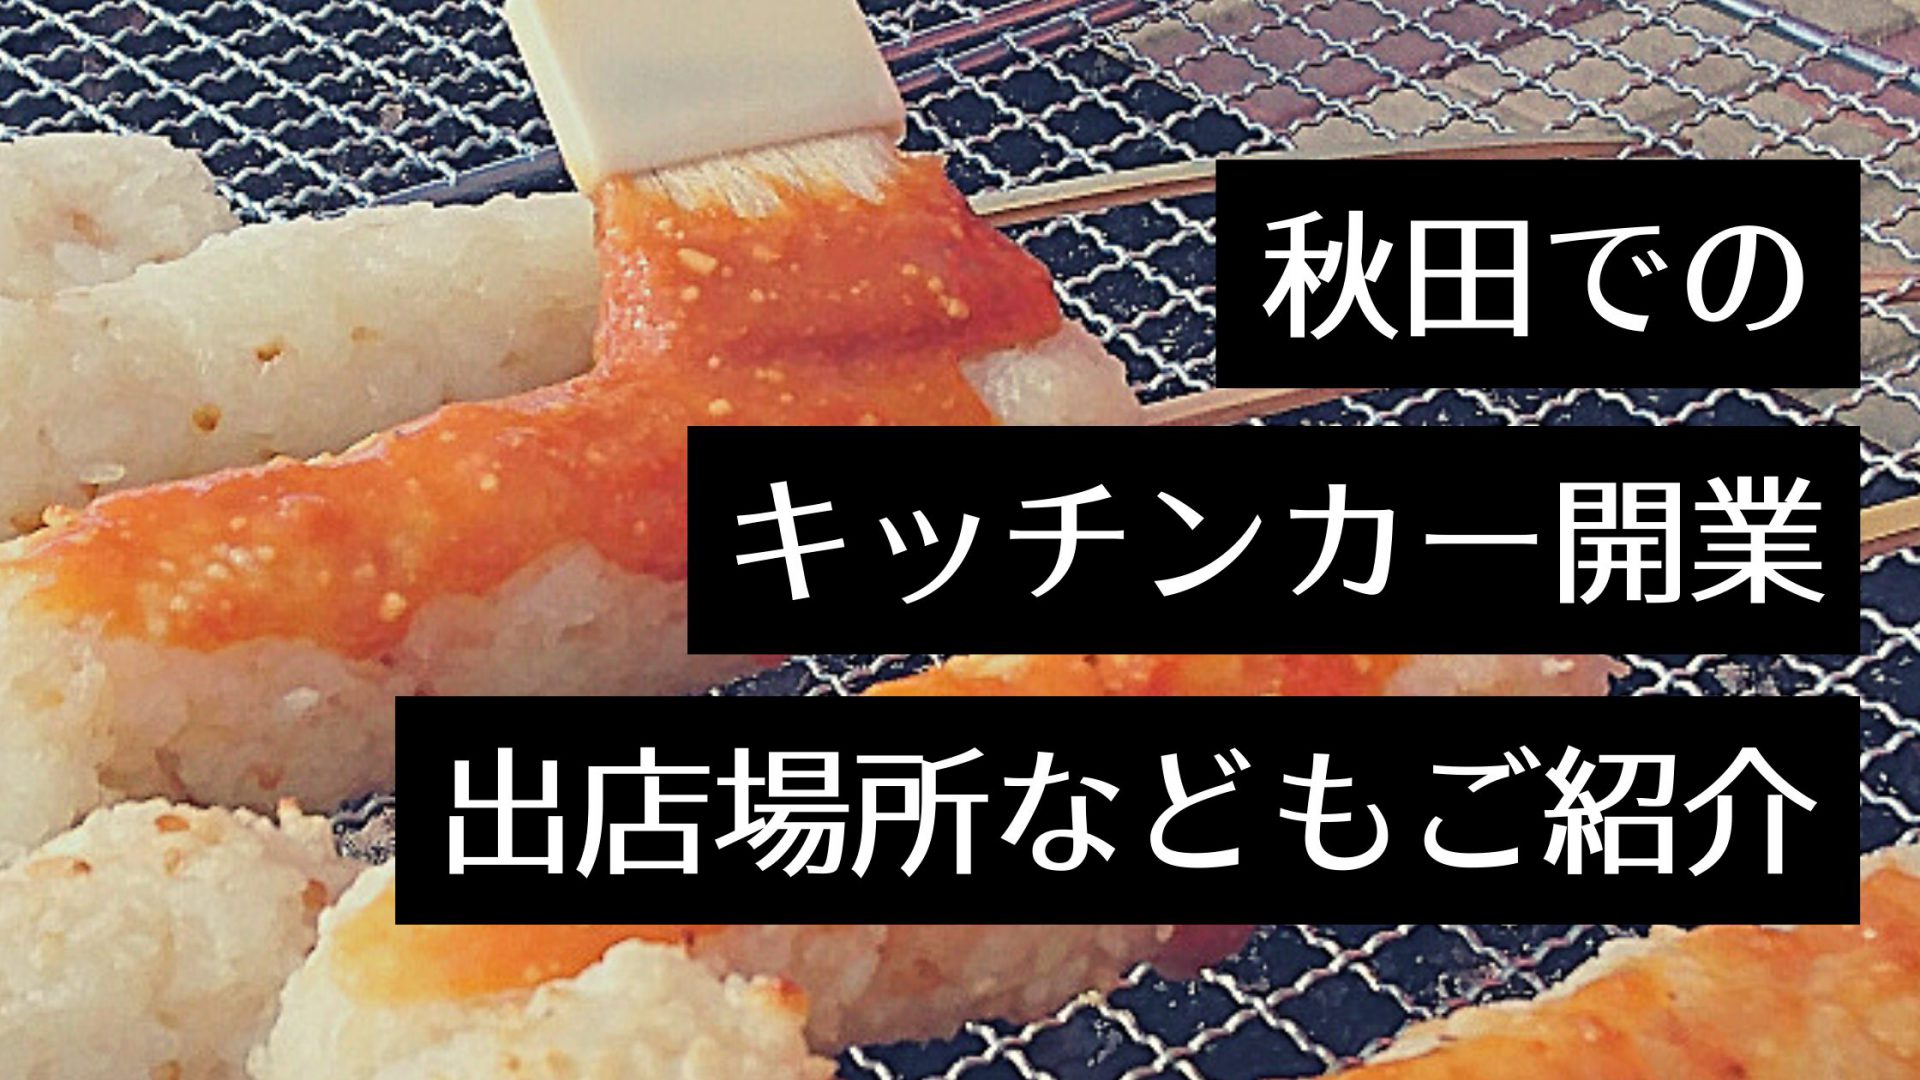 秋田県の人気キッチンカーのメニューや出店イベント情報、開業手順まとめ